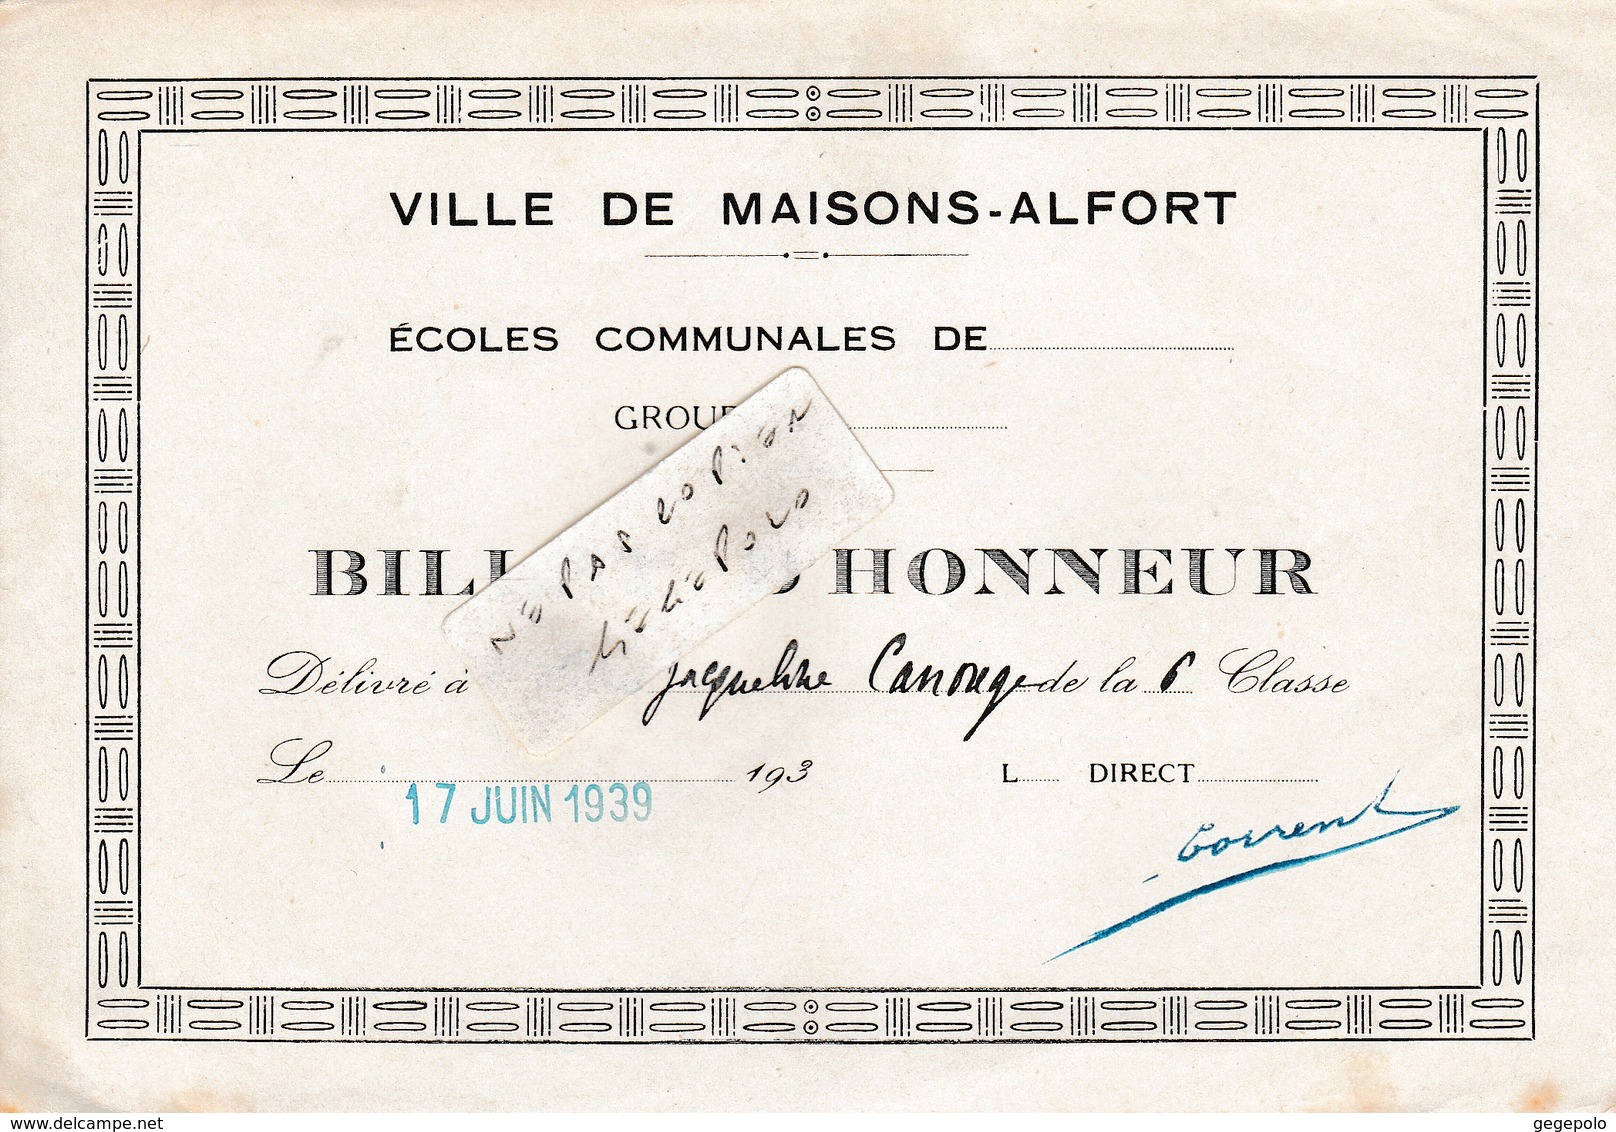 Ville De MAISONS-ALFORT (94) - Ecoles Communales Jules Ferry -  ( 2 ) Billet D'Honneur  ( En L'état D'usage ) - Diplomi E Pagelle